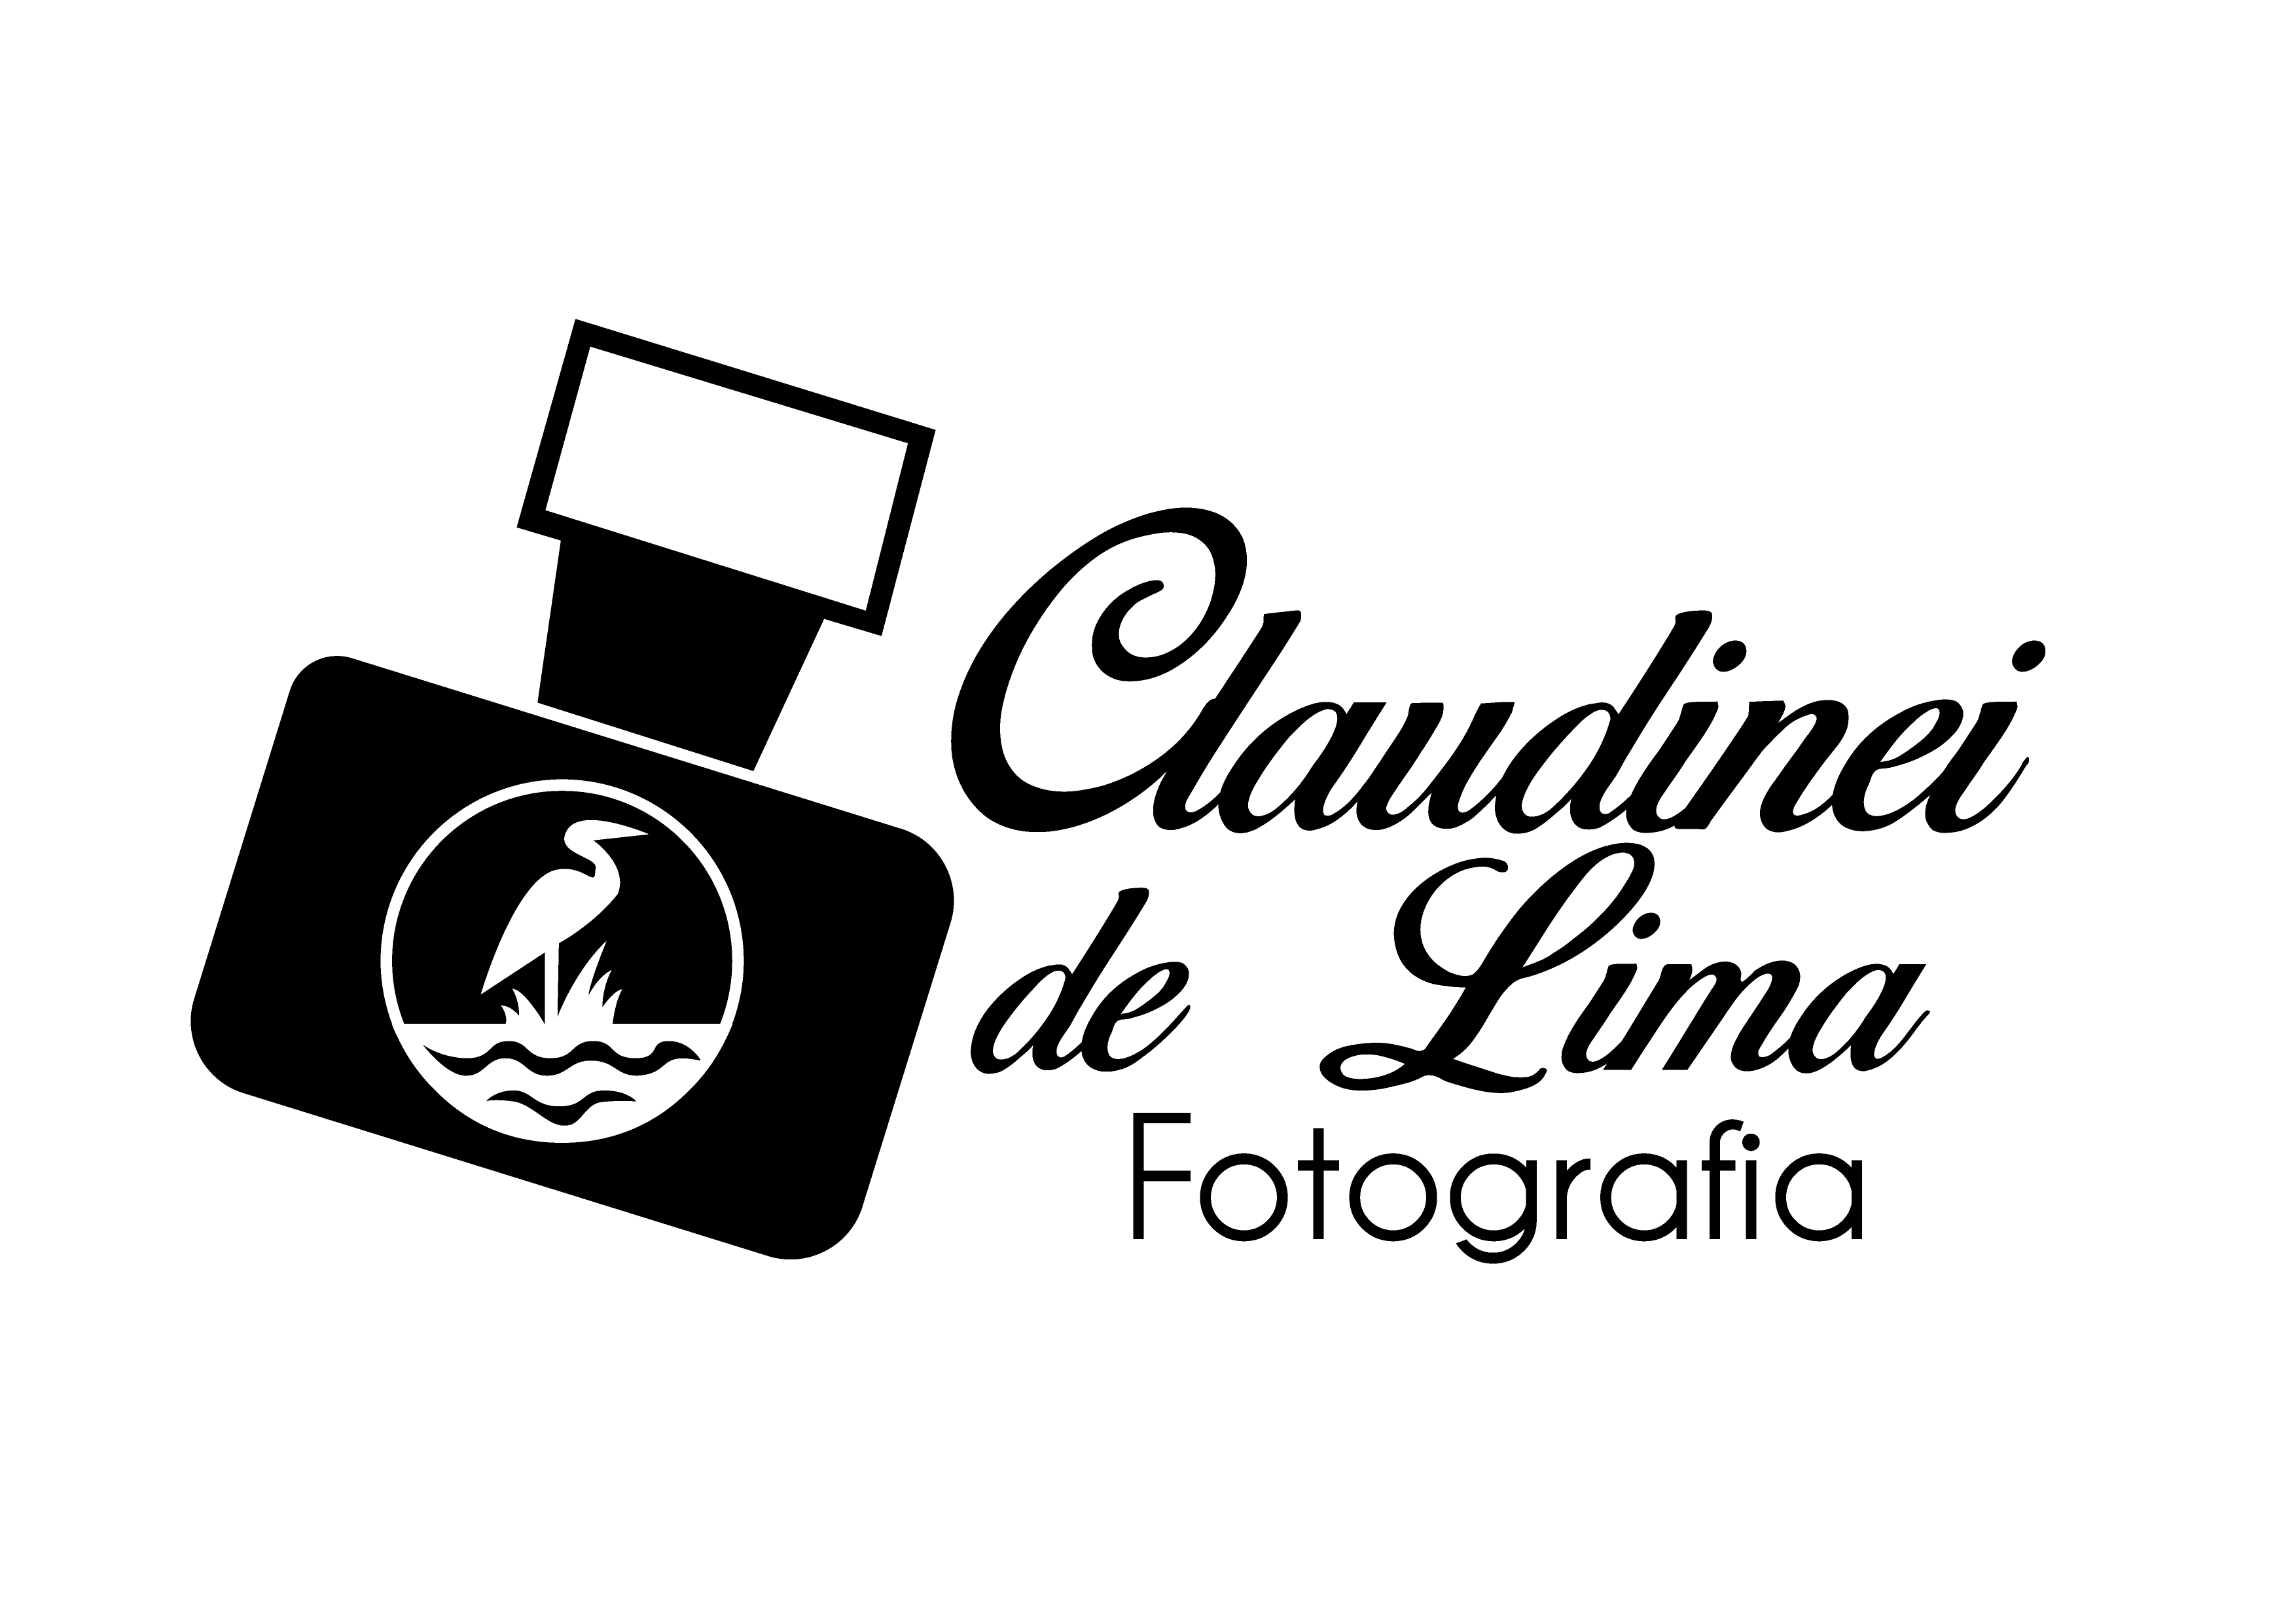 Claudinei de Lima Fotografia